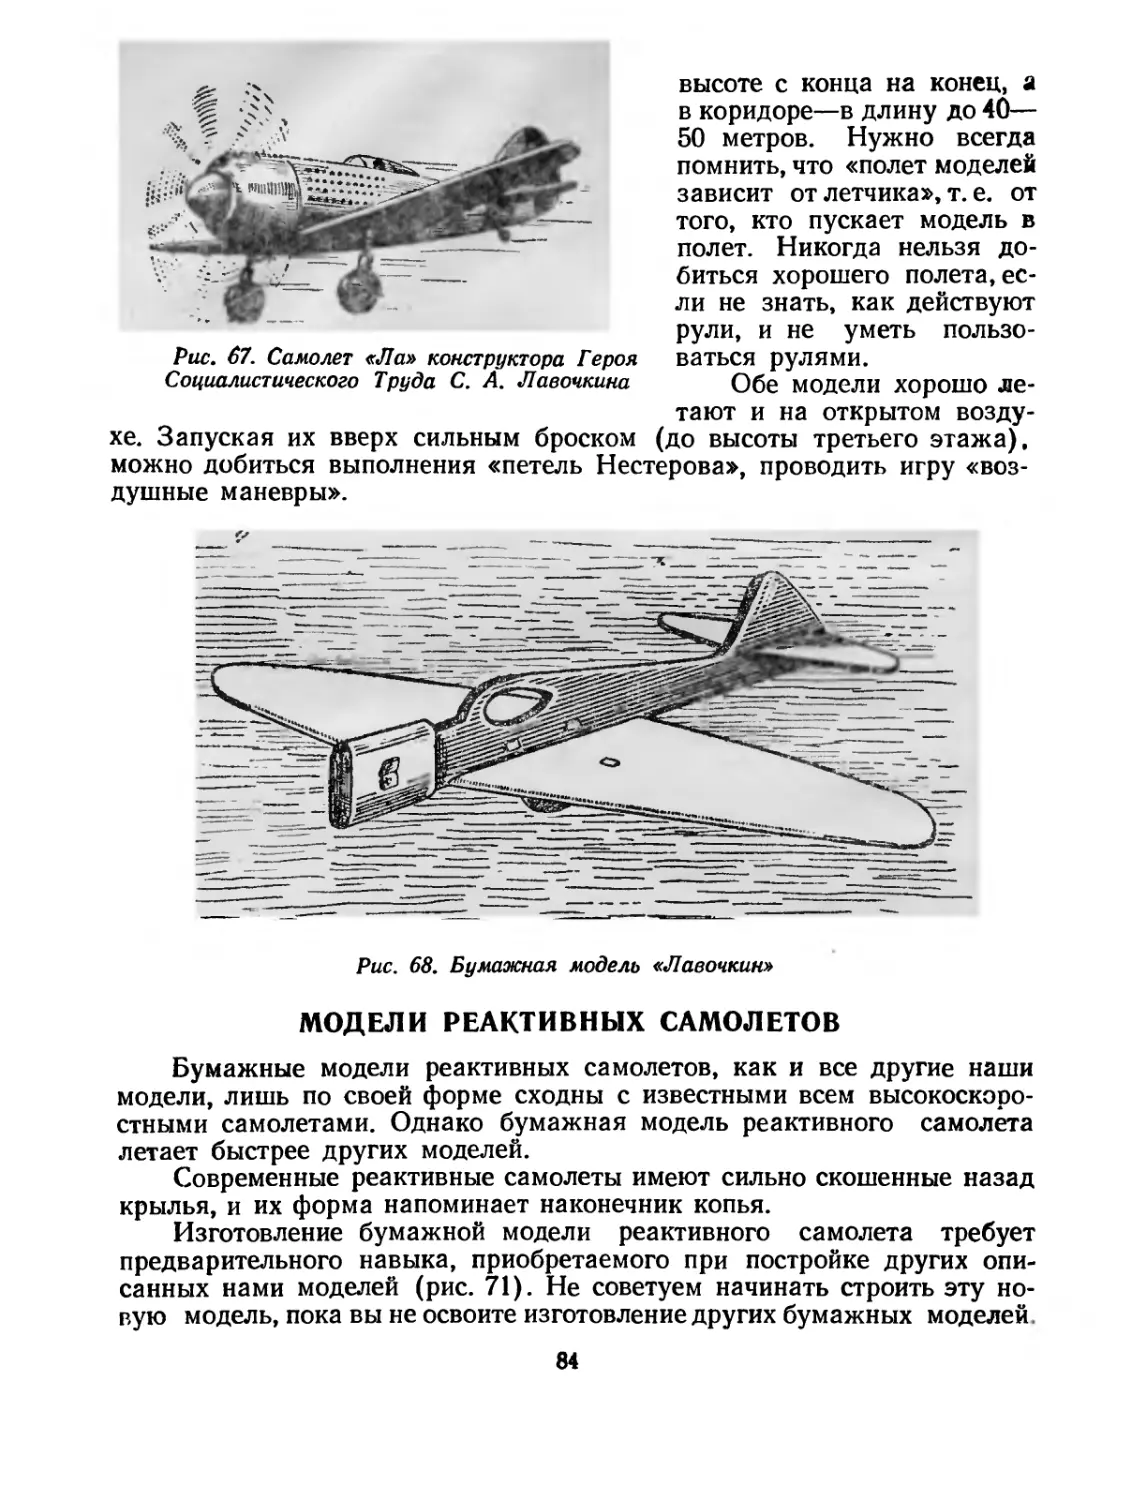 Модели реактивных самолетов